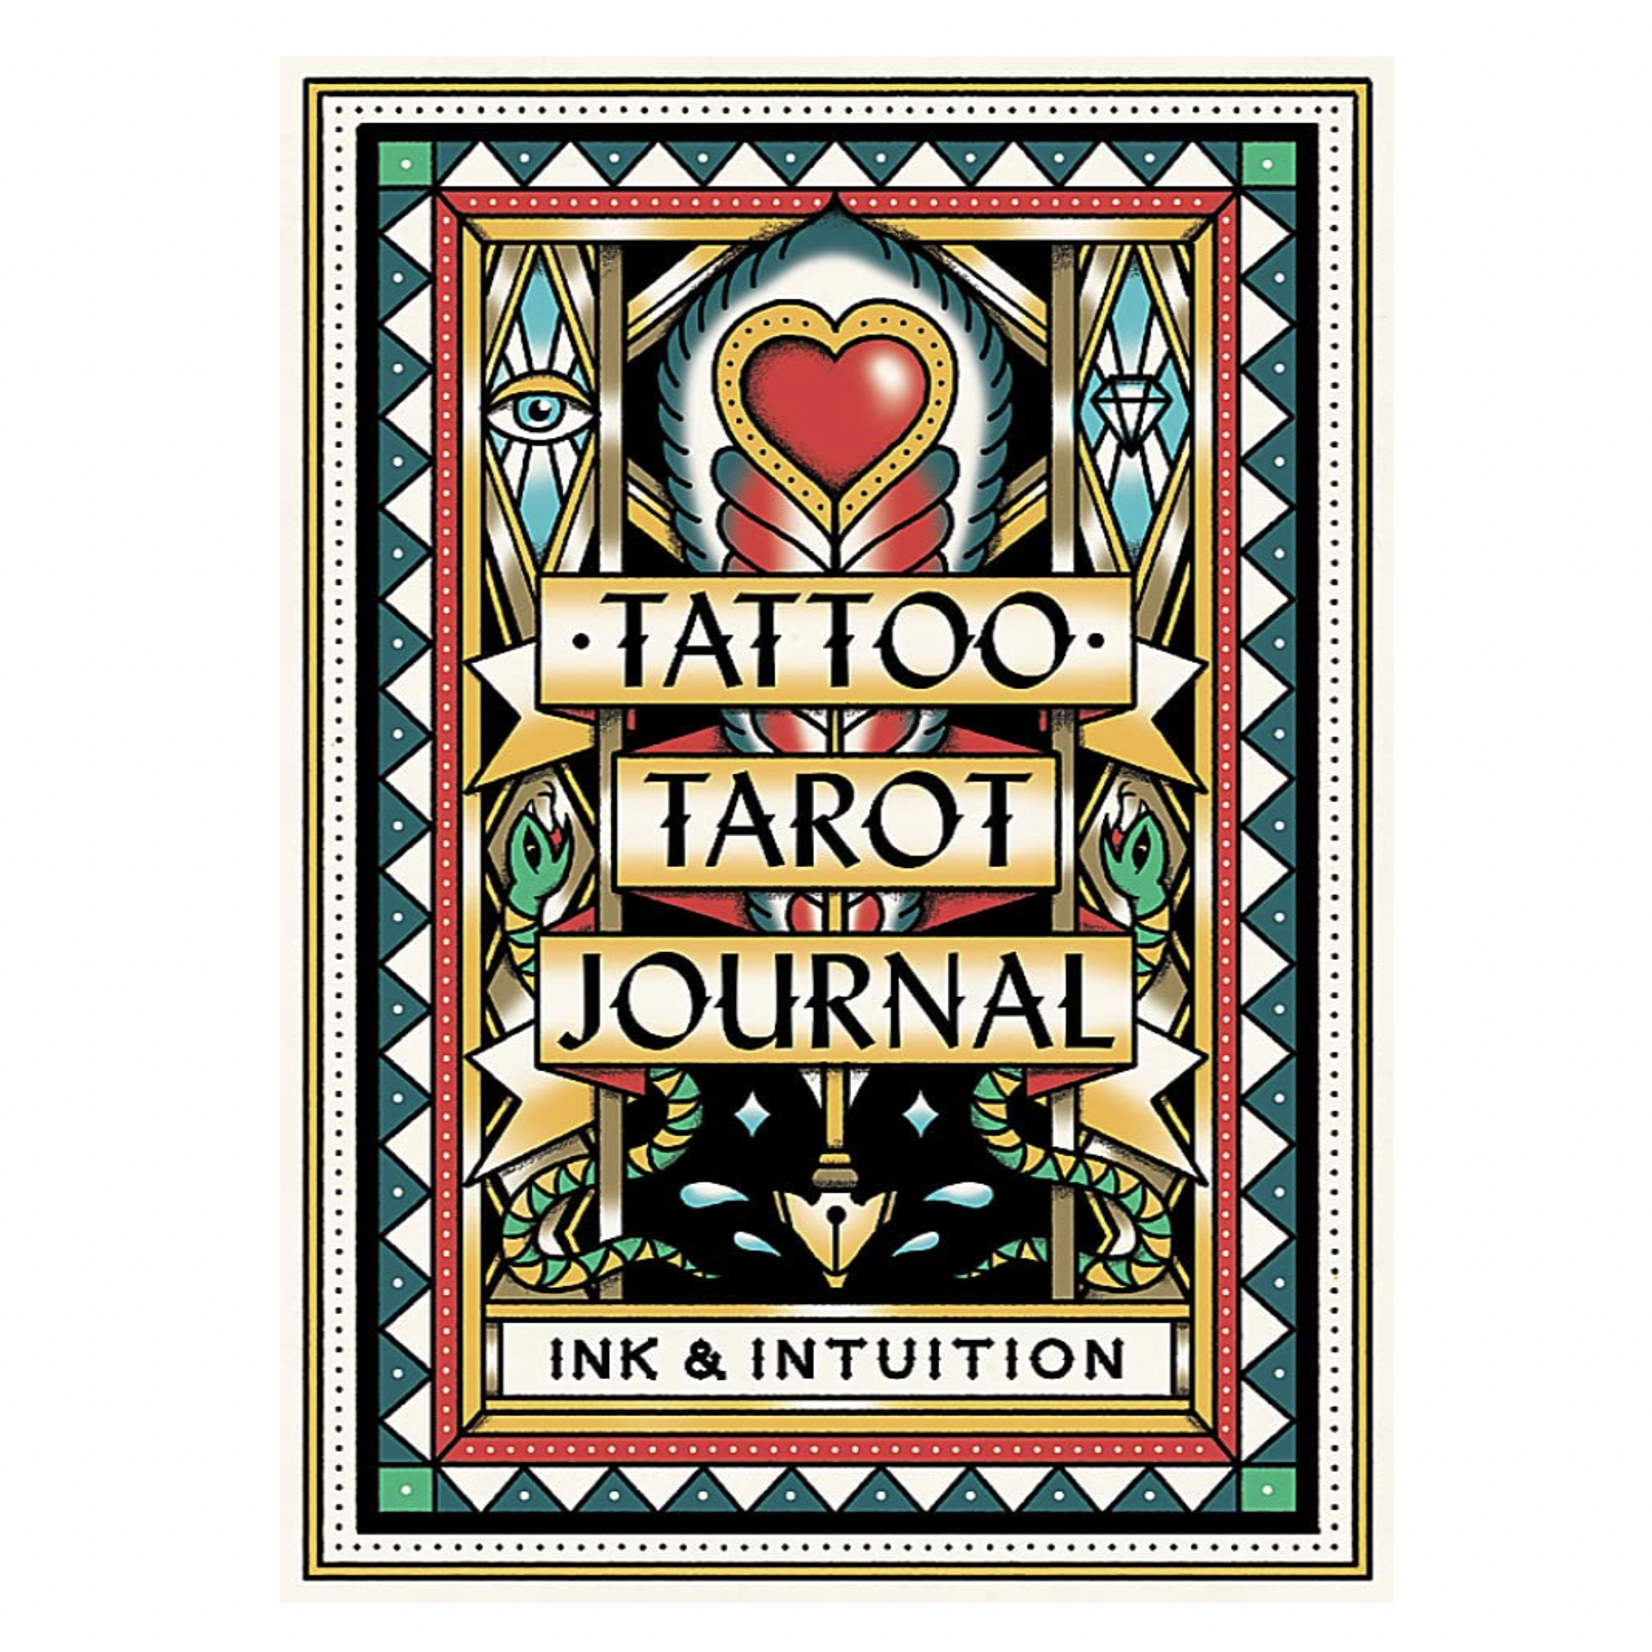 Tattoo Tarot Journal - The Brass Owl